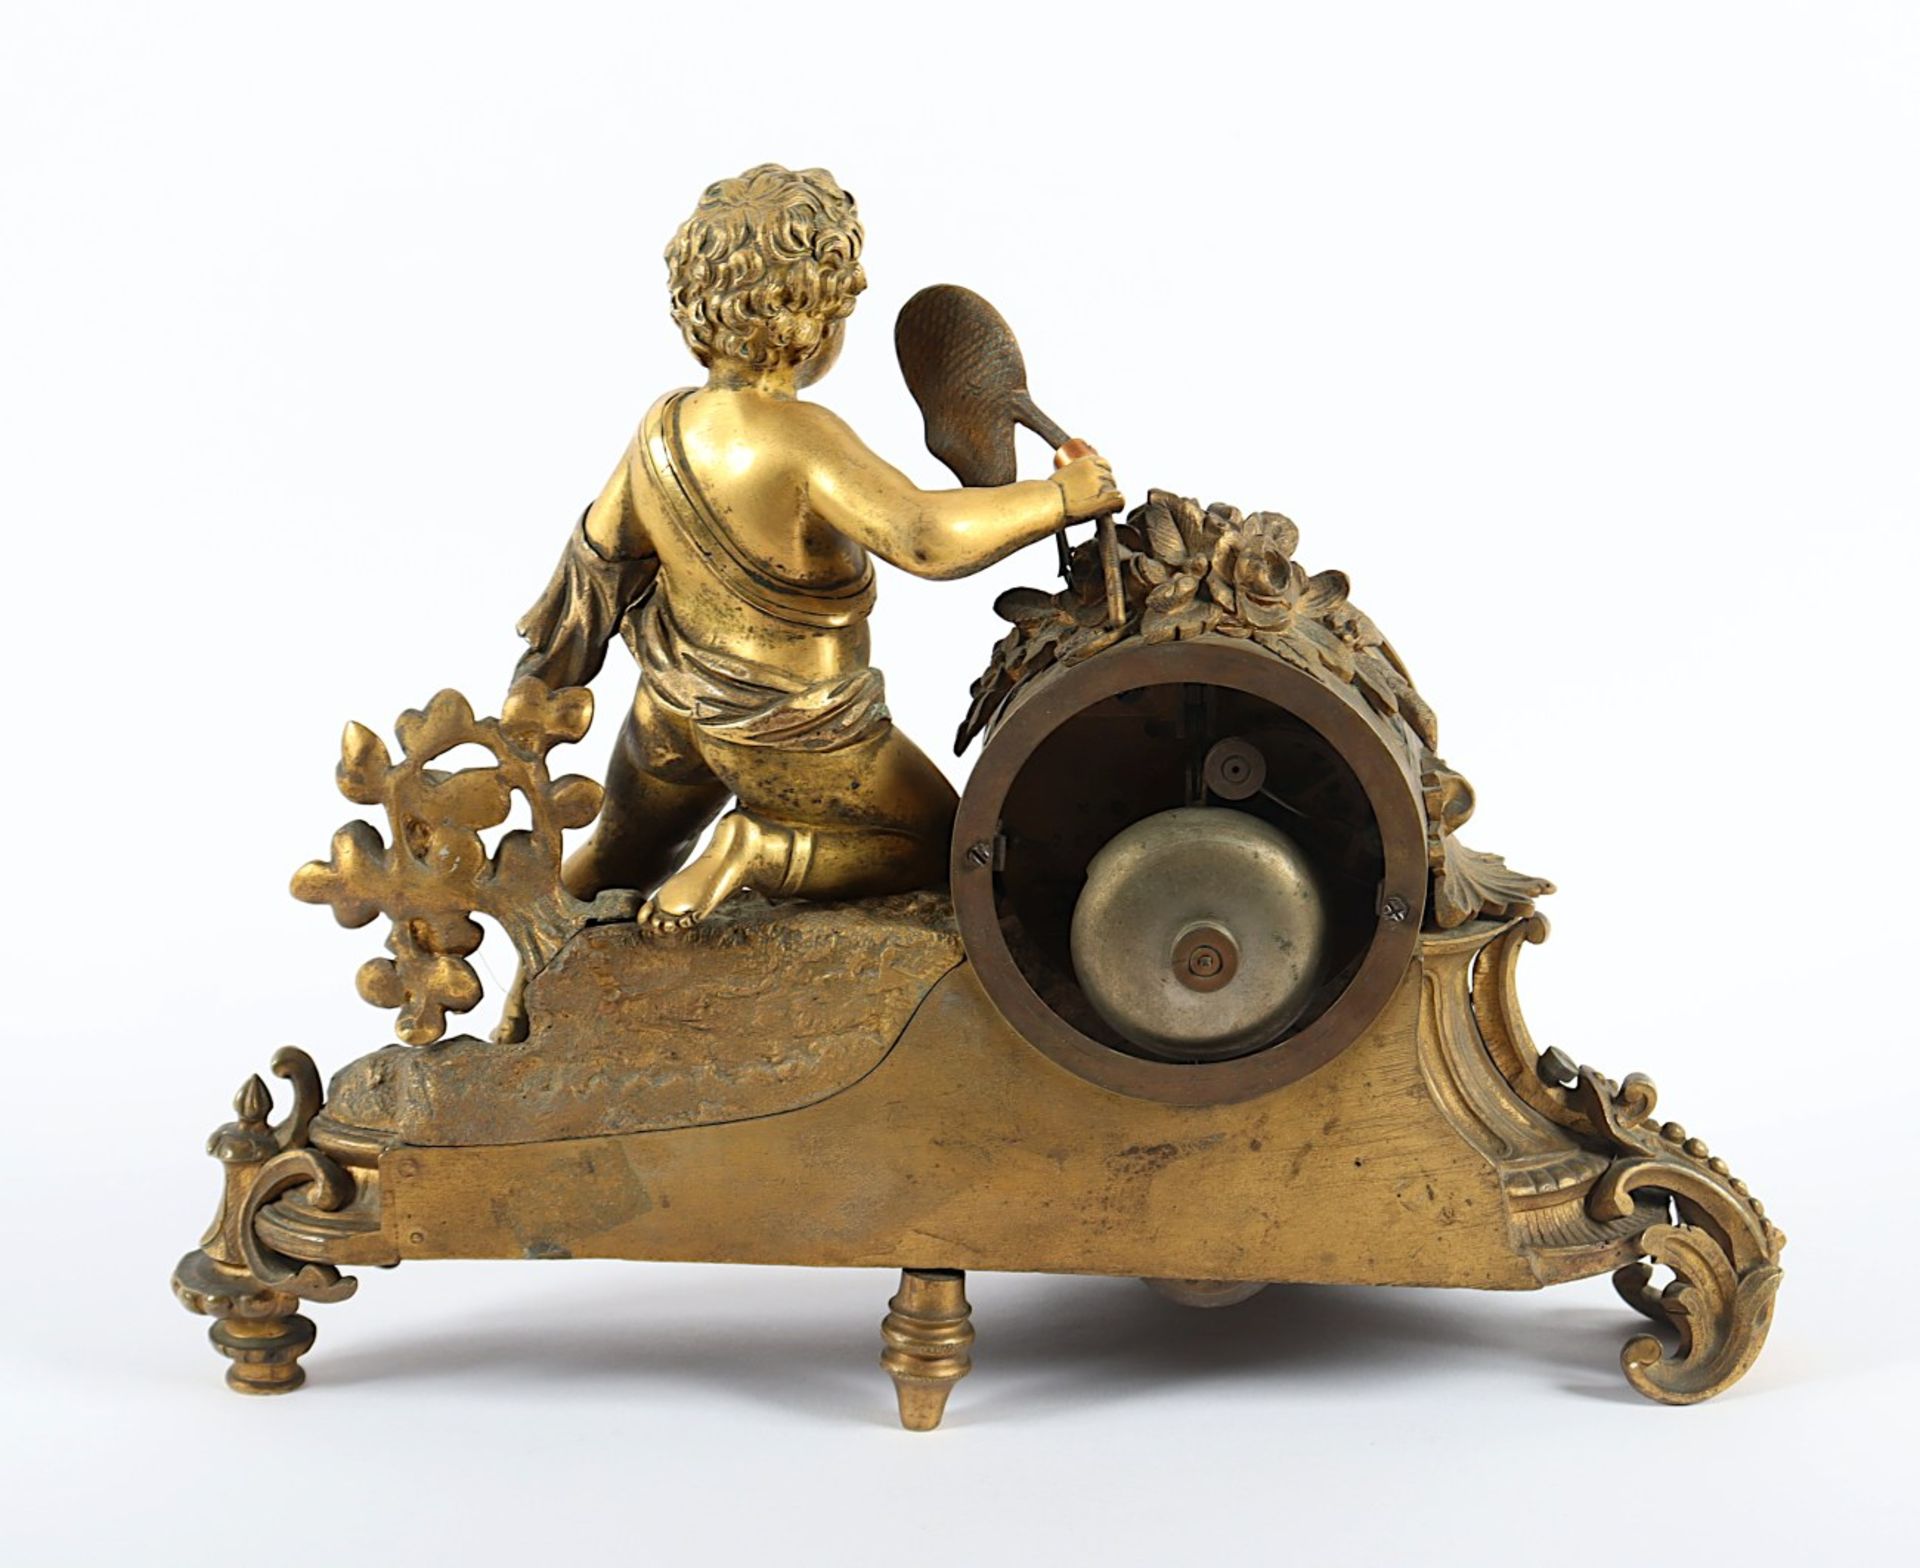 FIGURENPENDULE, Bronze, vergoldet, besch., Werk mit Schlag auf Glocke, rev.bed., H 26, beigegeben e - Image 3 of 5